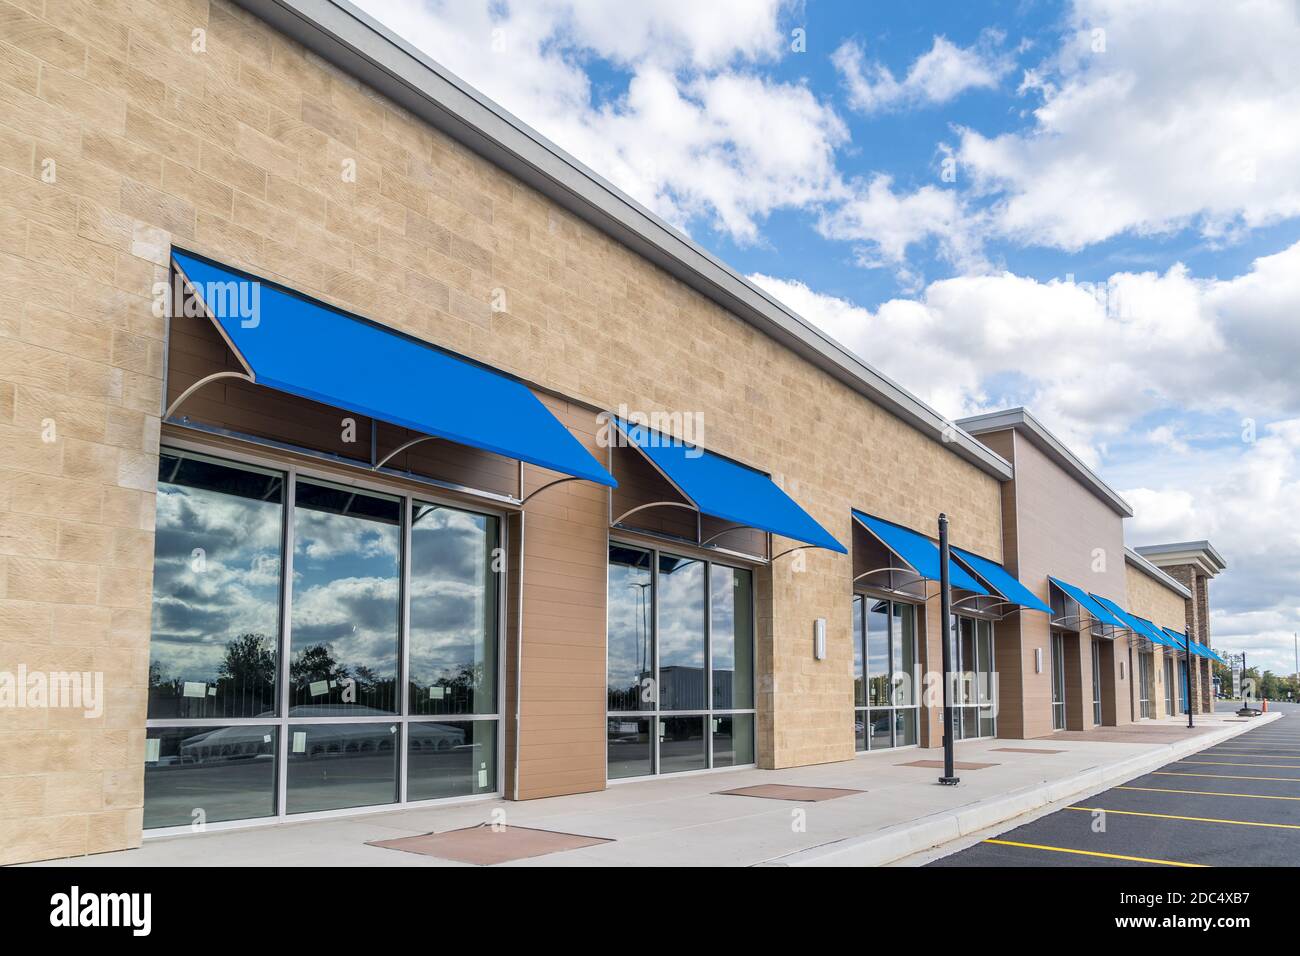 Brandneu, ohne Logo, Beschilderung oder Label-Schaufenster einer im Bau befindlichen Mall in den USA mit blauen Markisen über dem Eingang, blau bewölktem Himmel Ref Stockfoto